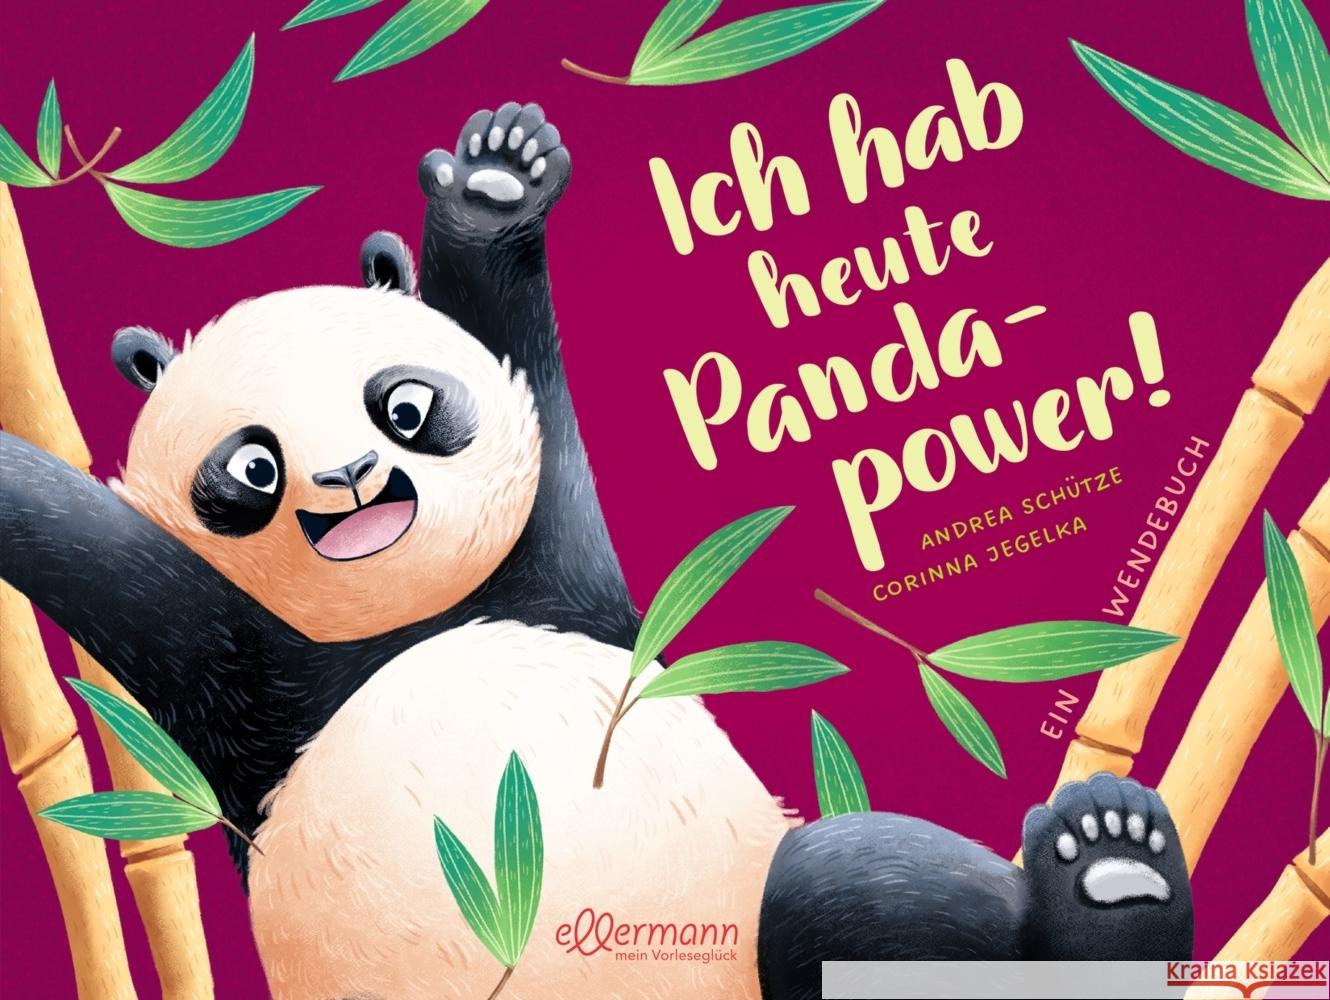 Ich hab heute Pandapower! / Mir ist heute langweilig! Schütze, Andrea 9783751400749 Ellermann - książka